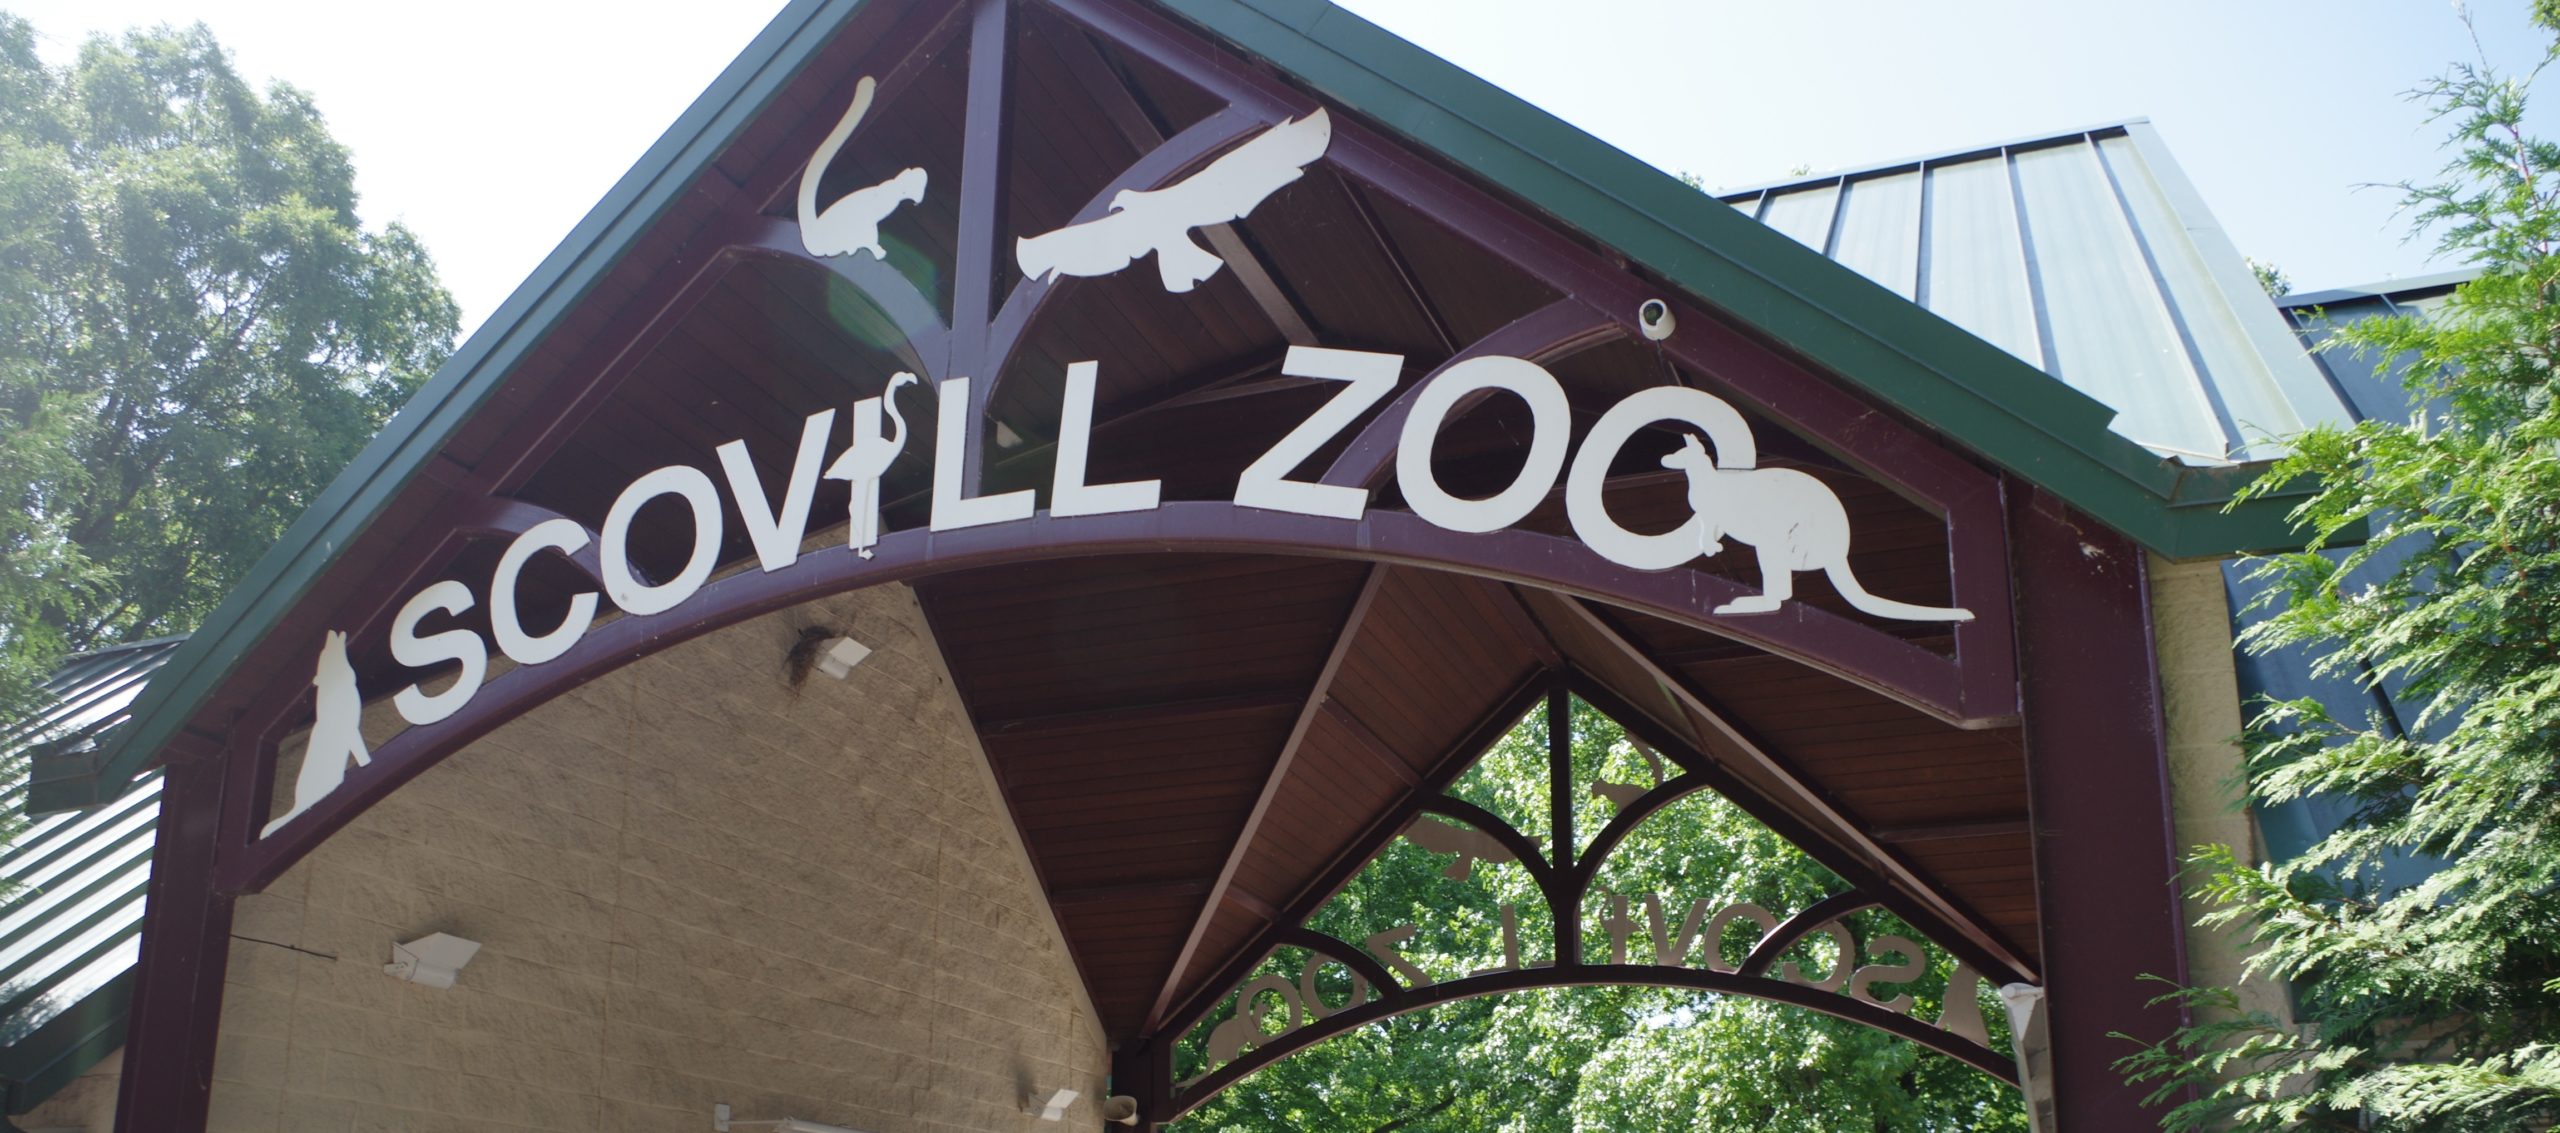 Scovill Zoo Decatur, IL (2019)